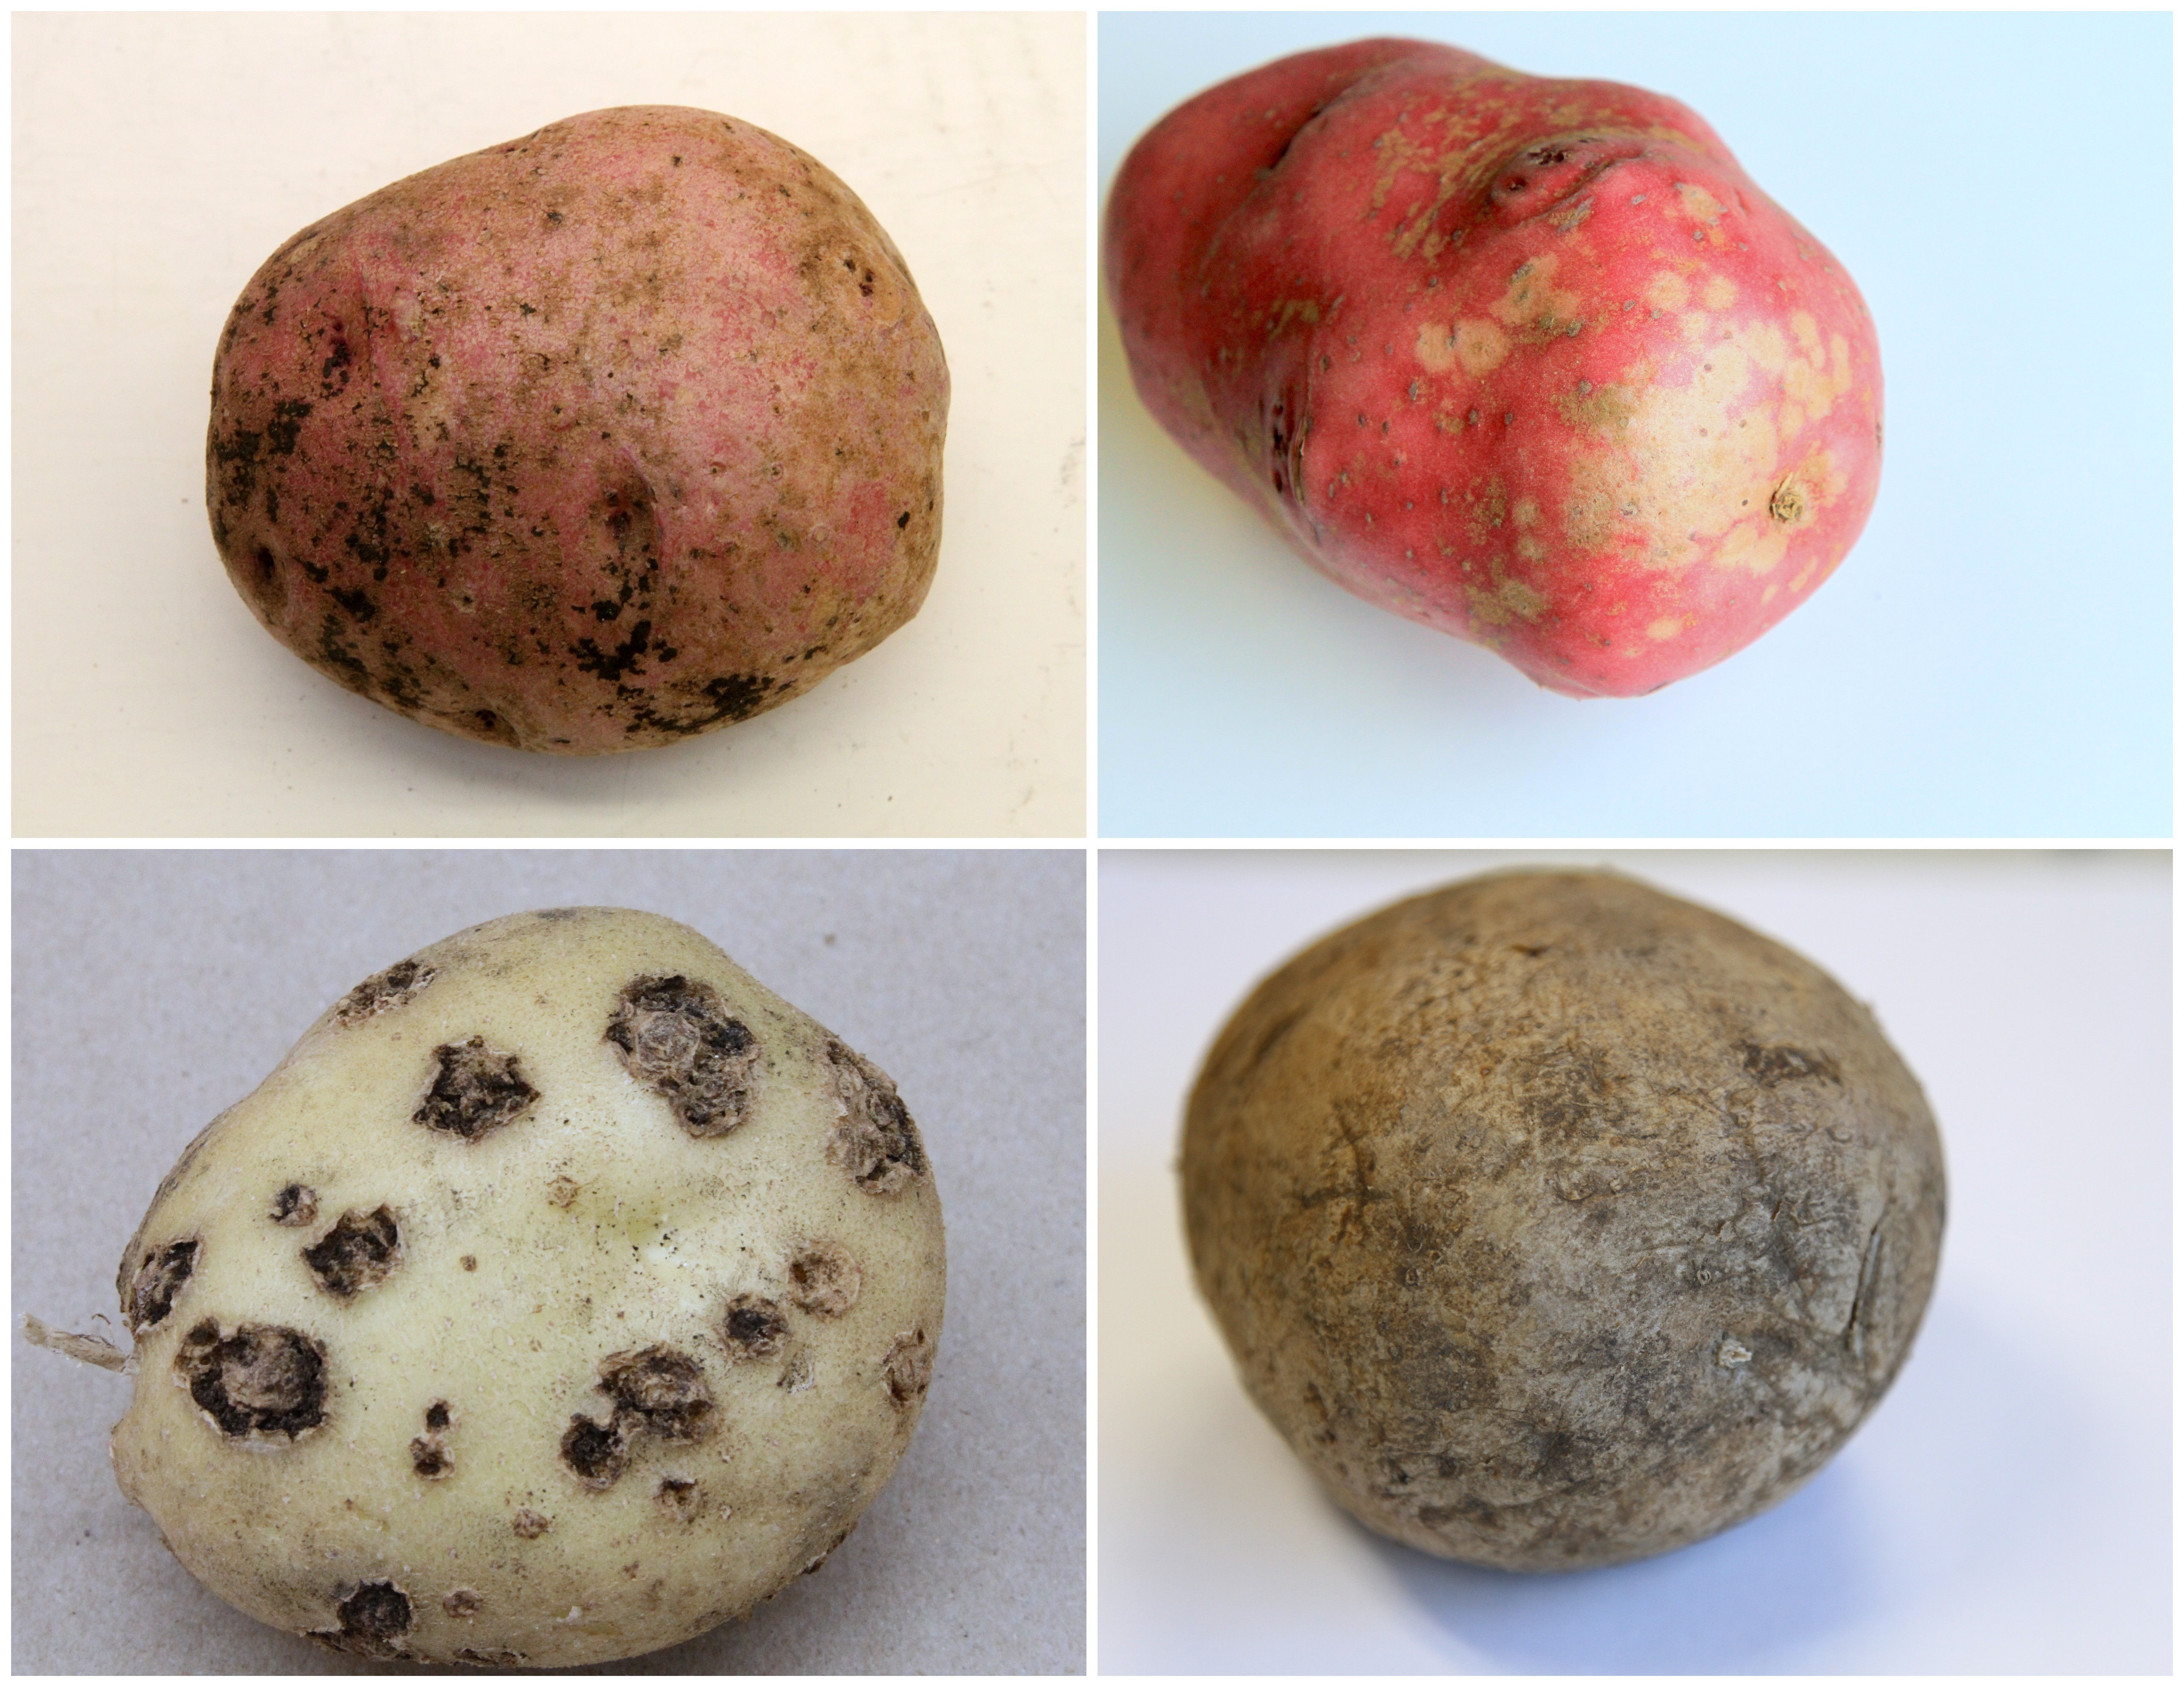 Identifying Surface Blemishes on Potato Tubers 